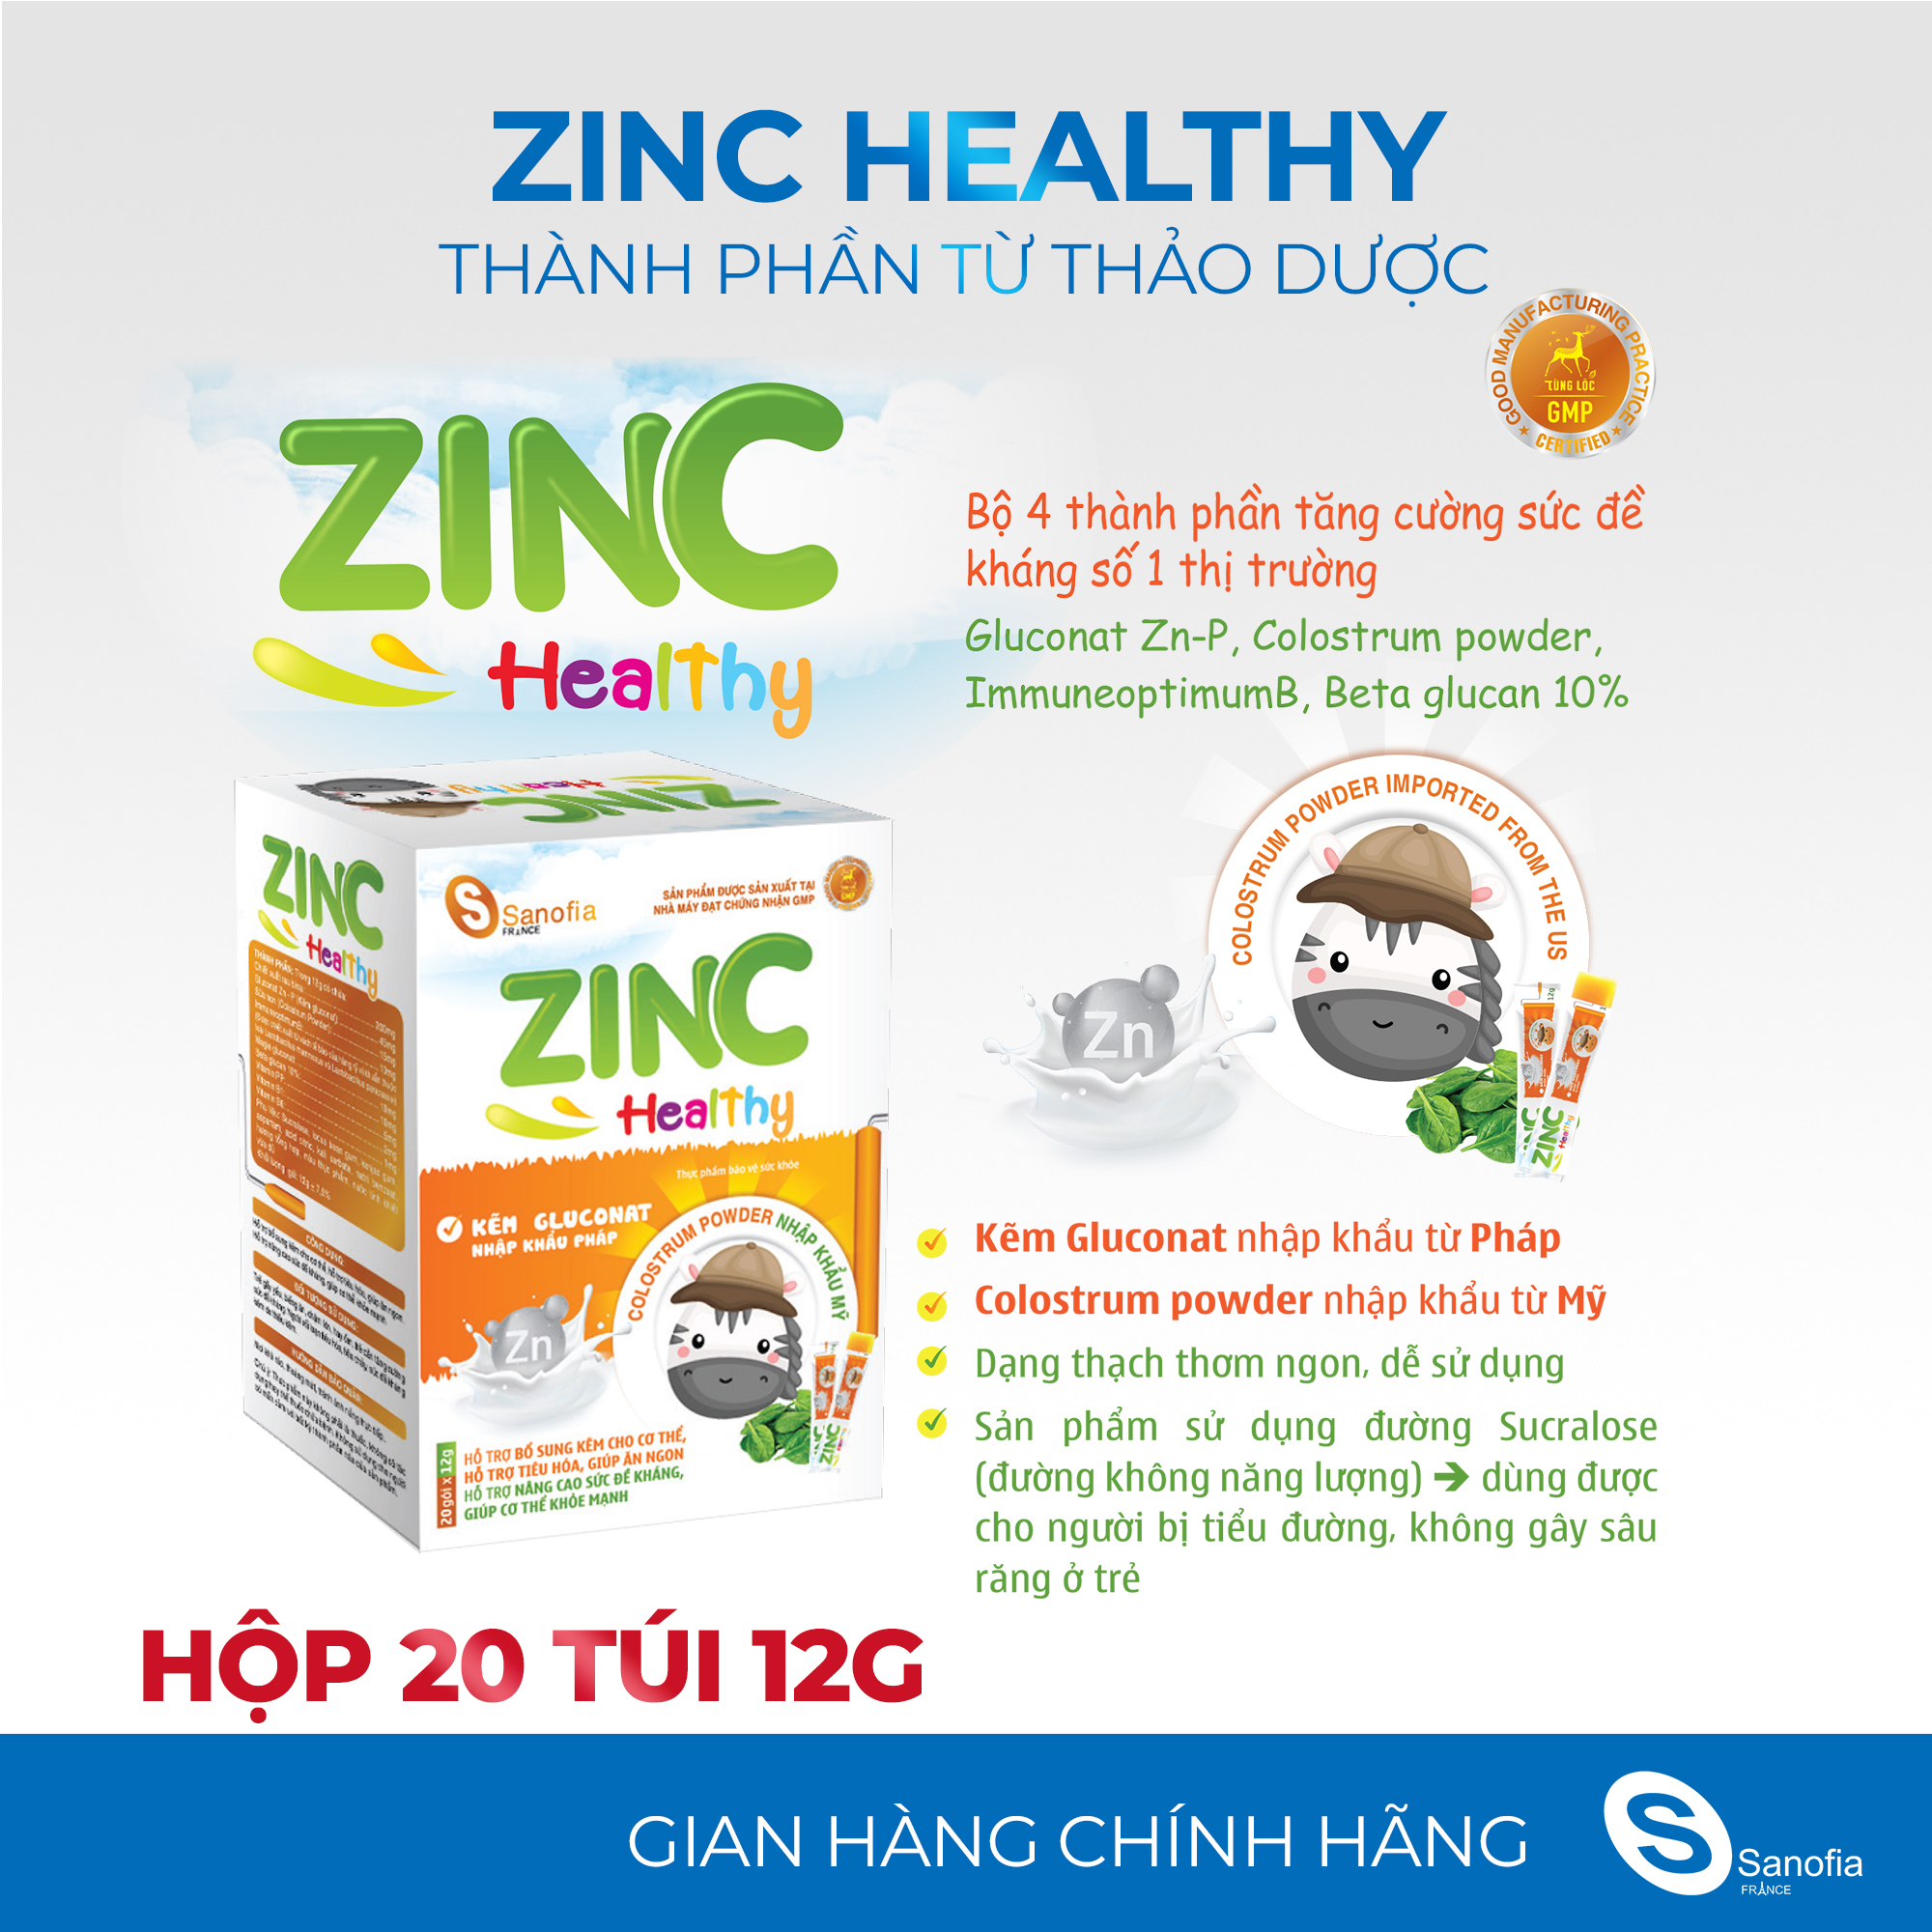 Thạch ăn ngon cho bé Zinc Healthy Sanofia - Bổ sung kẽm, tiêu hóa tốt giúp bé ăn ngủ ngon - Hộp 20 gói Thomsoncare